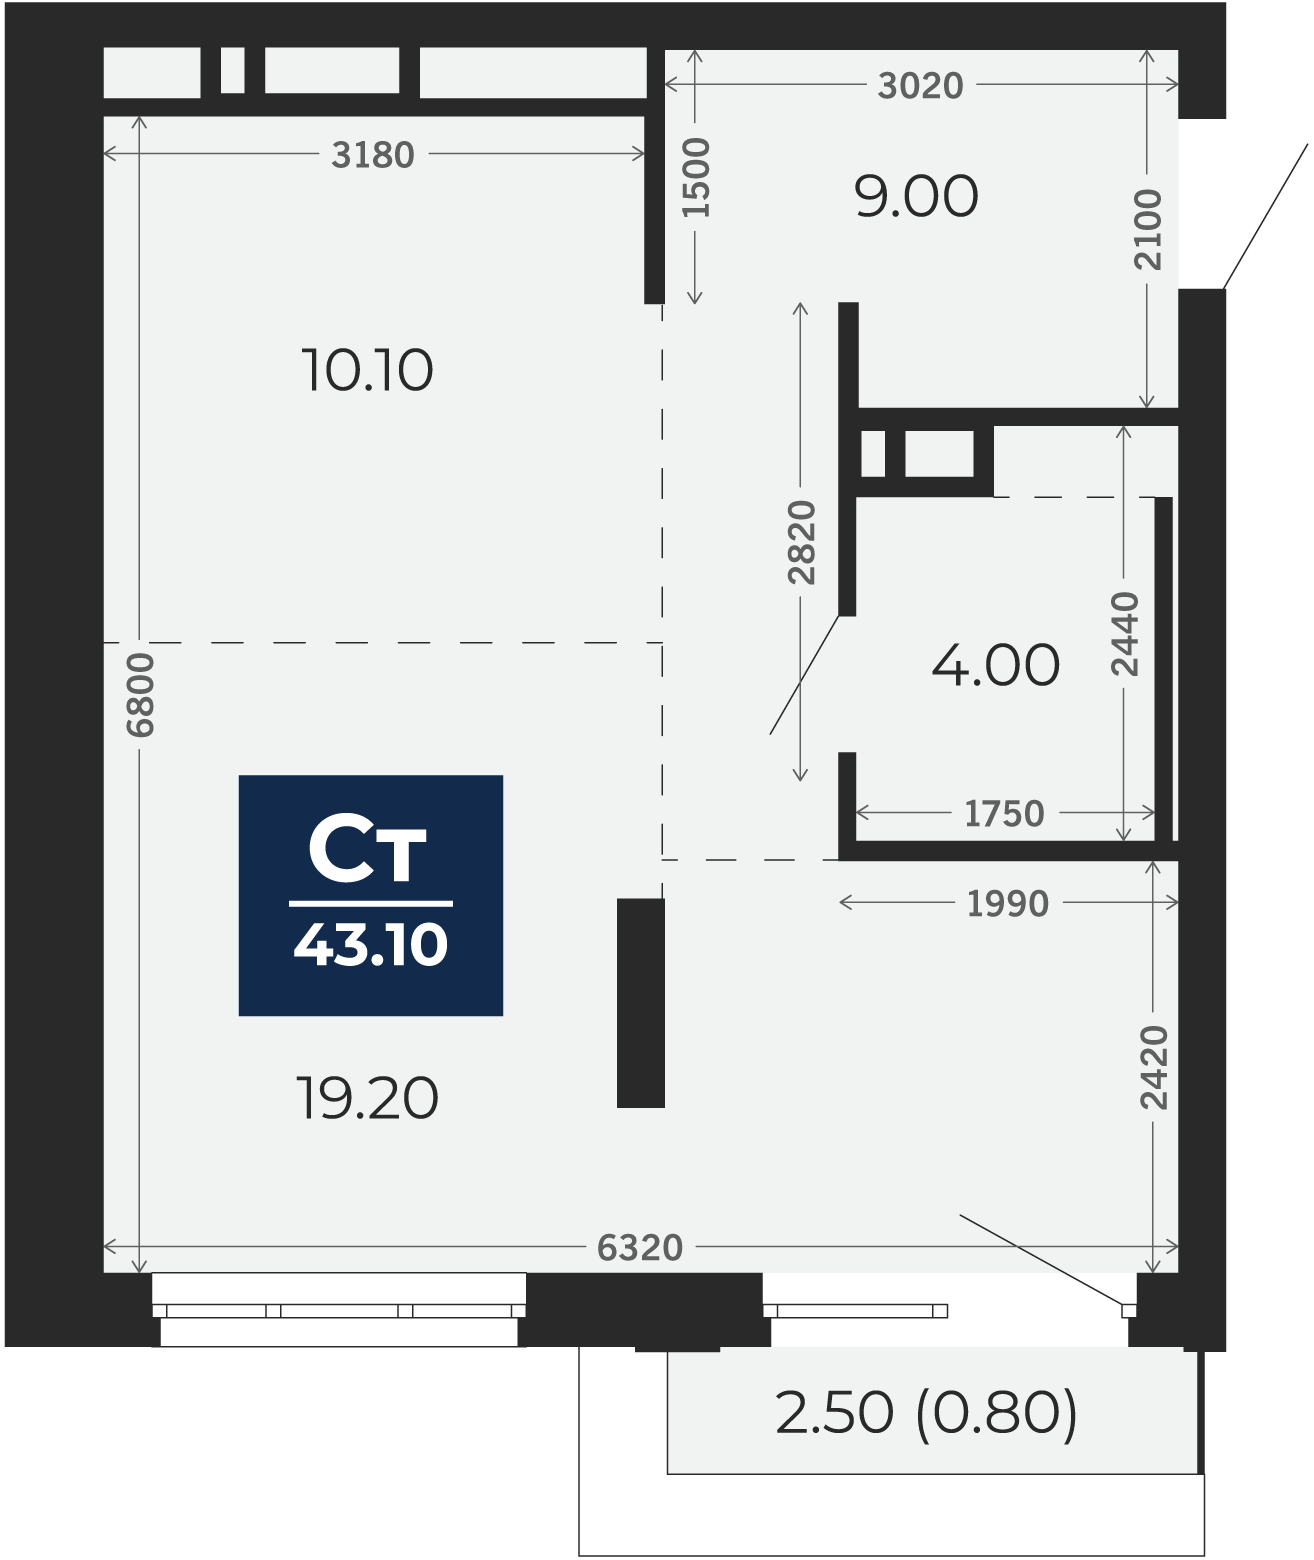 Квартира № 346, Студия, 43.1 кв. м, 17 этаж